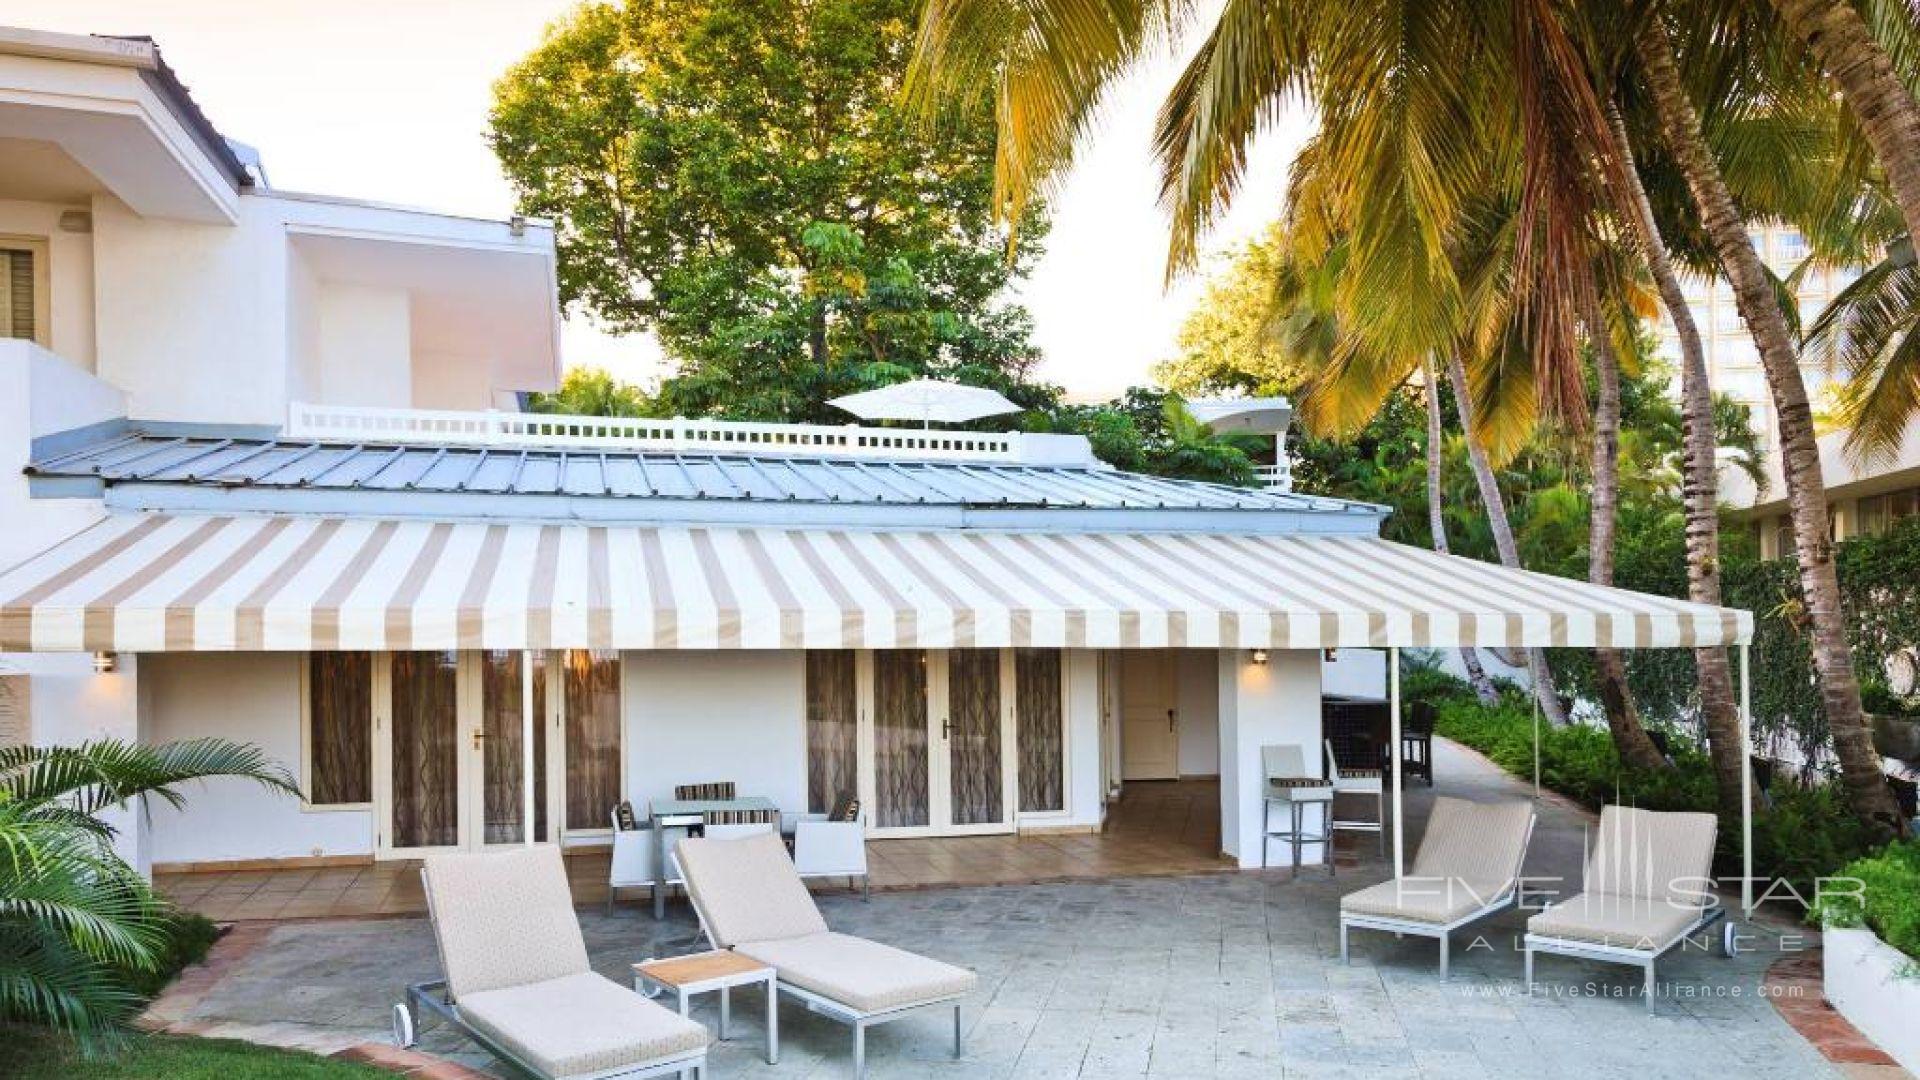 Fairmont El San Juan's Only 2-story Suite - Casa Del Mar Suite